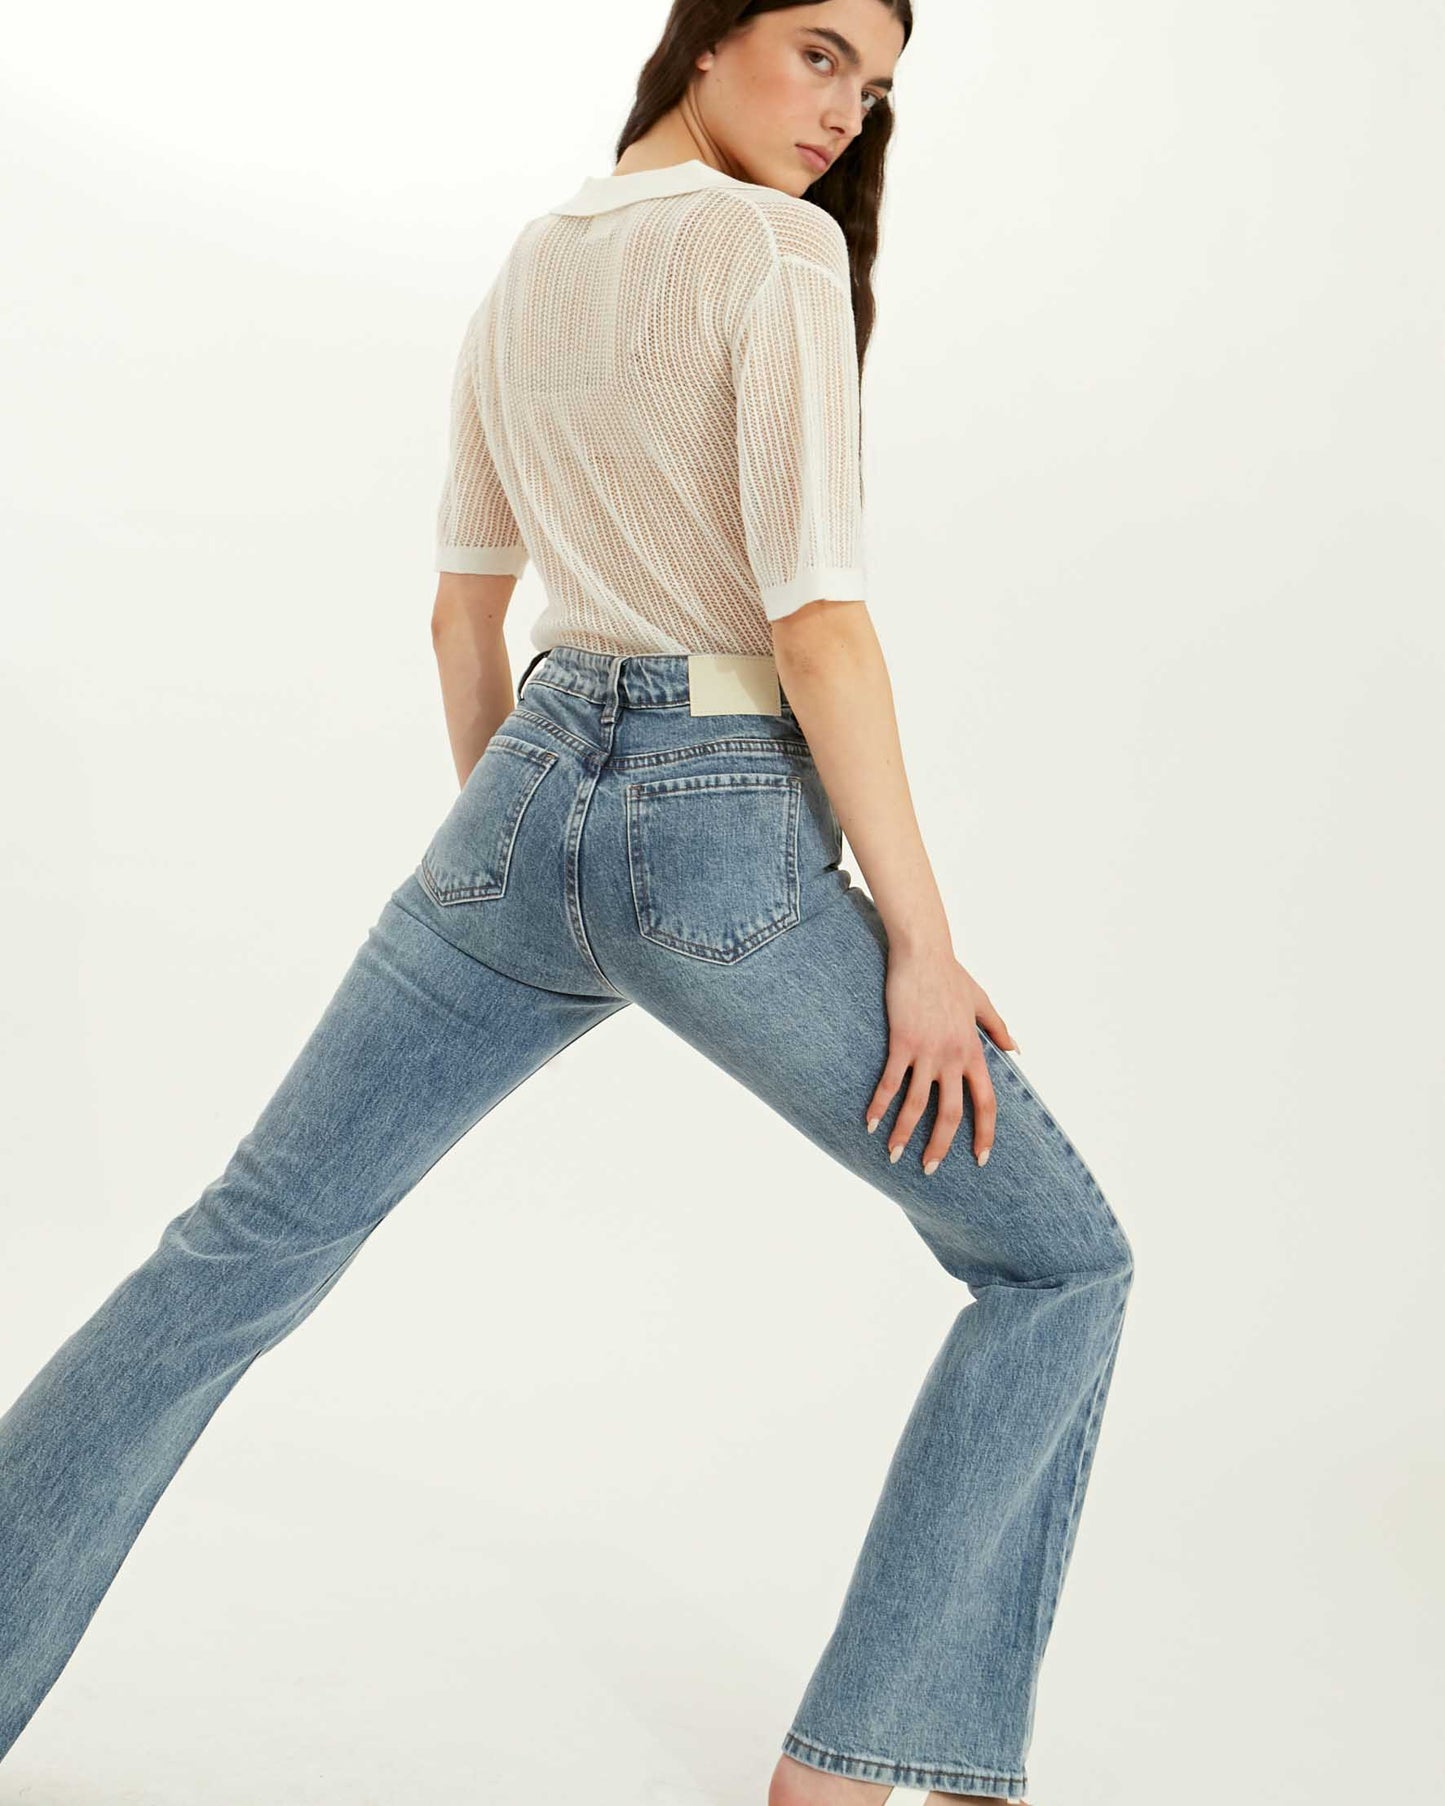 ג'ינס רחב במקומות הנכונים